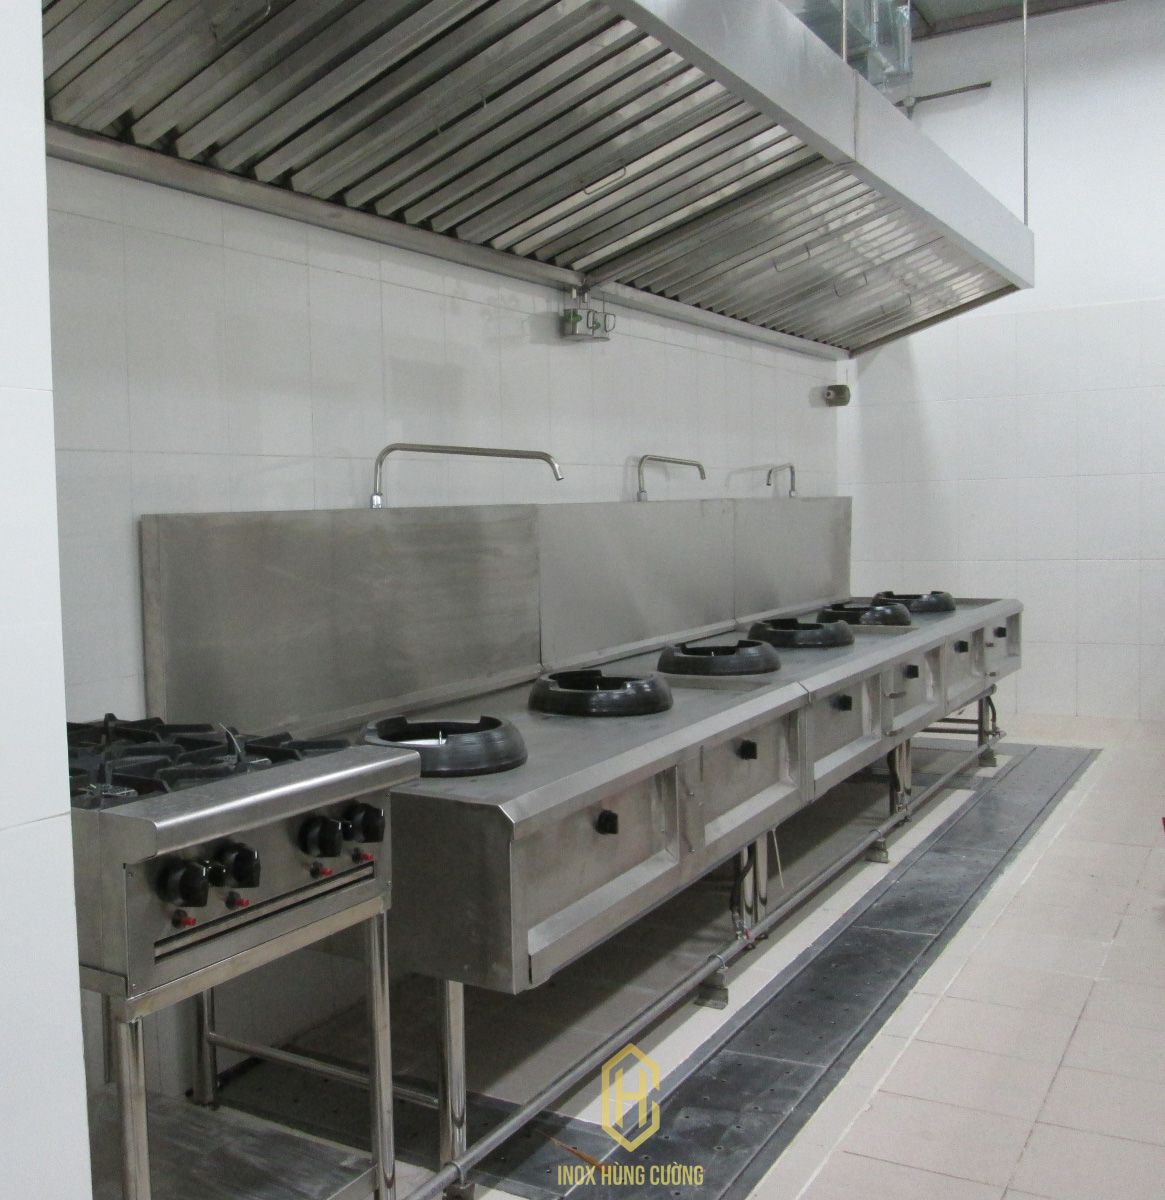 Phân biệt sự khác nhau trong các thiết bị hệ thống bếp công nghiệp